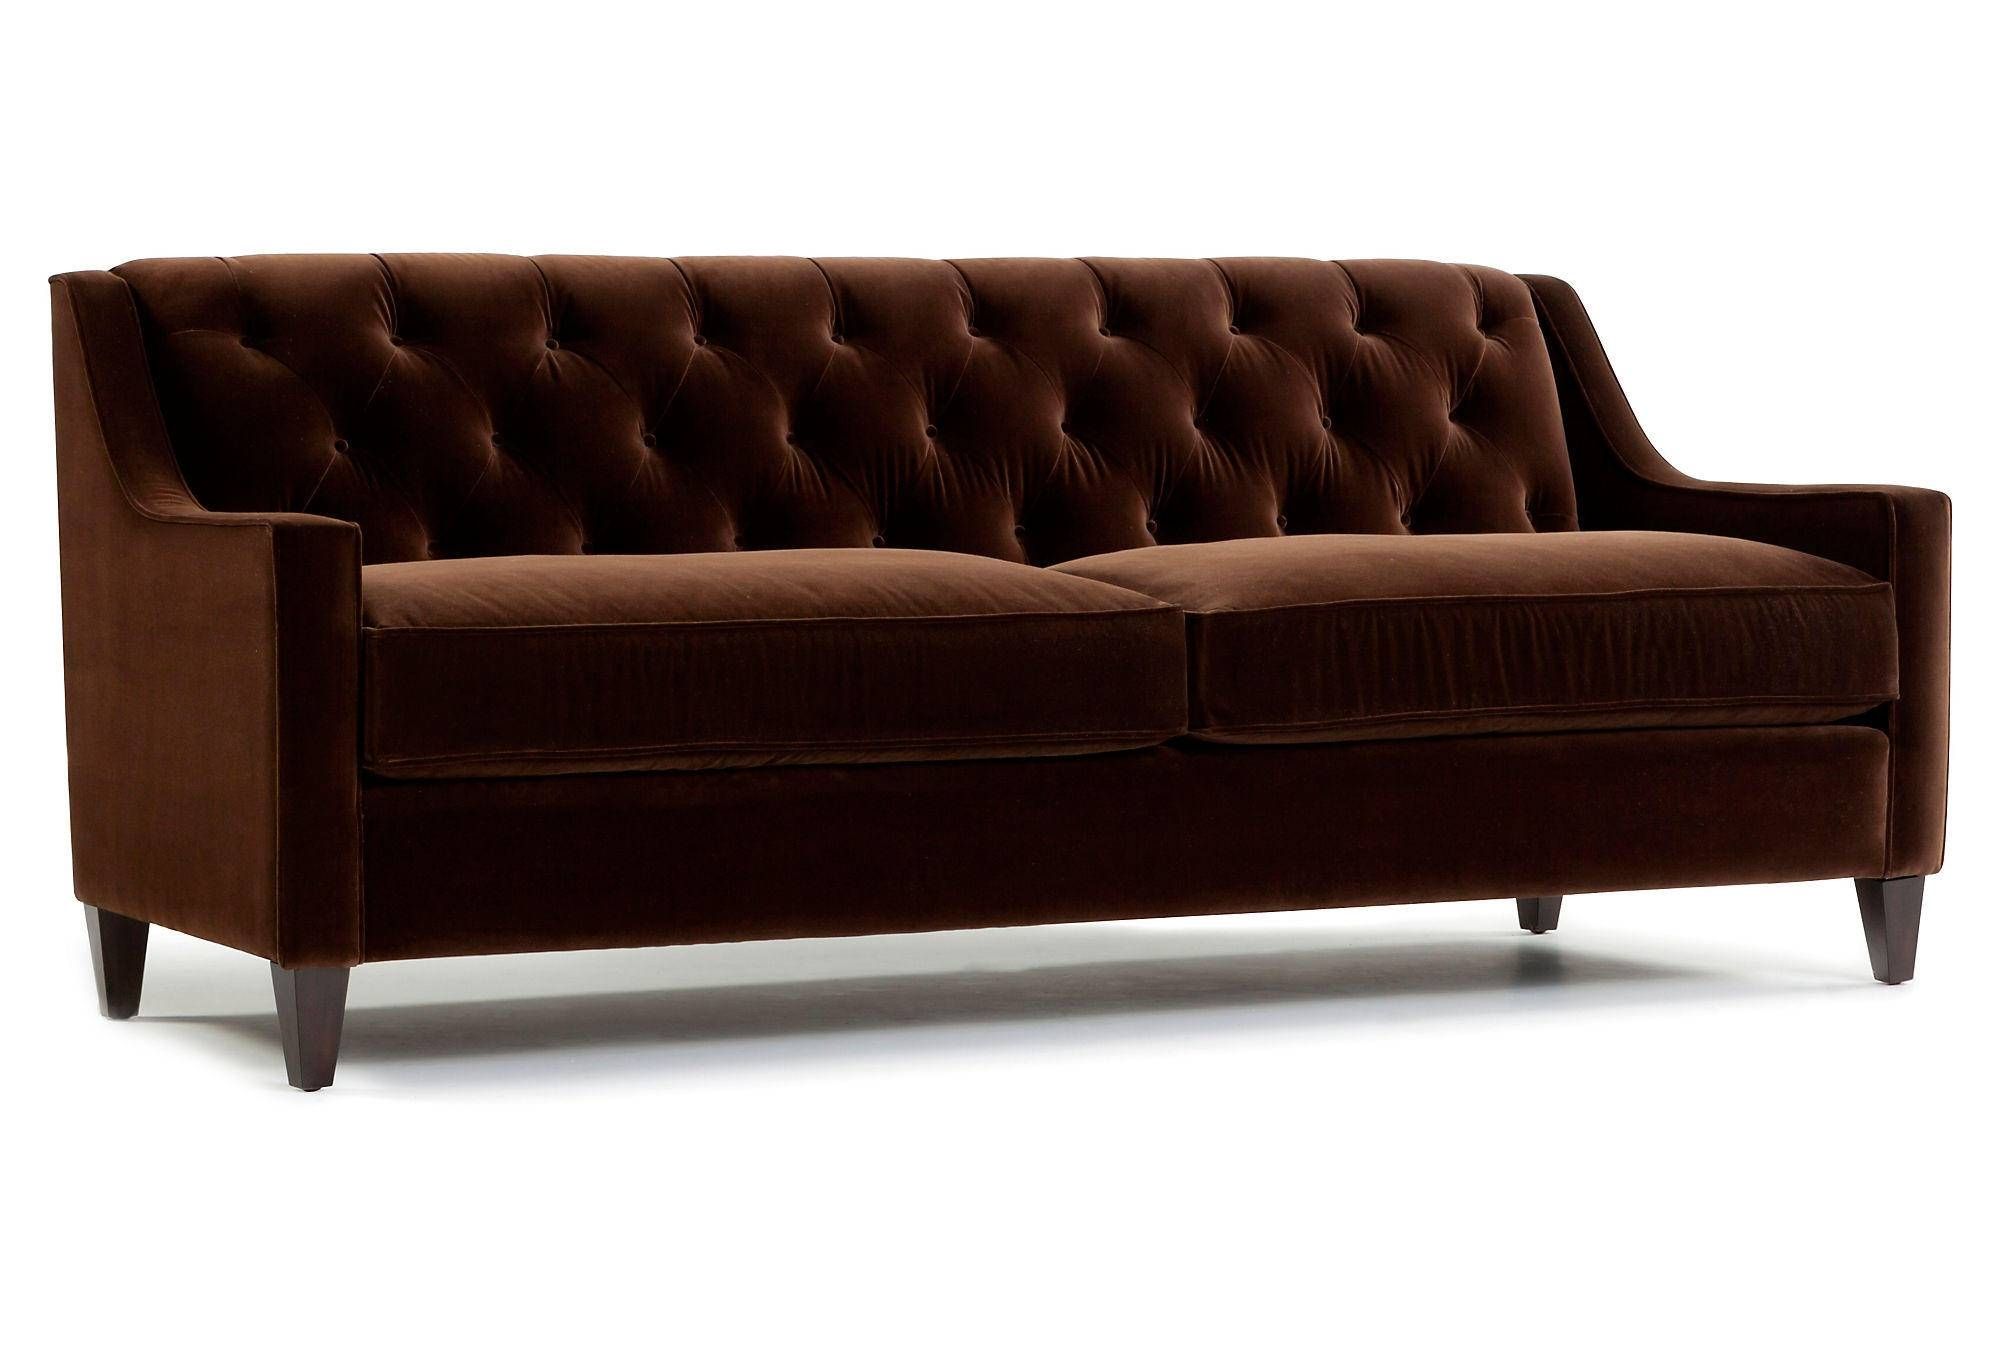 Dark Brown Velvet Tufted Sofa With Wooden Legs And 2 Cushions For Inside Brown Velvet Sofas (Photo 1 of 15)